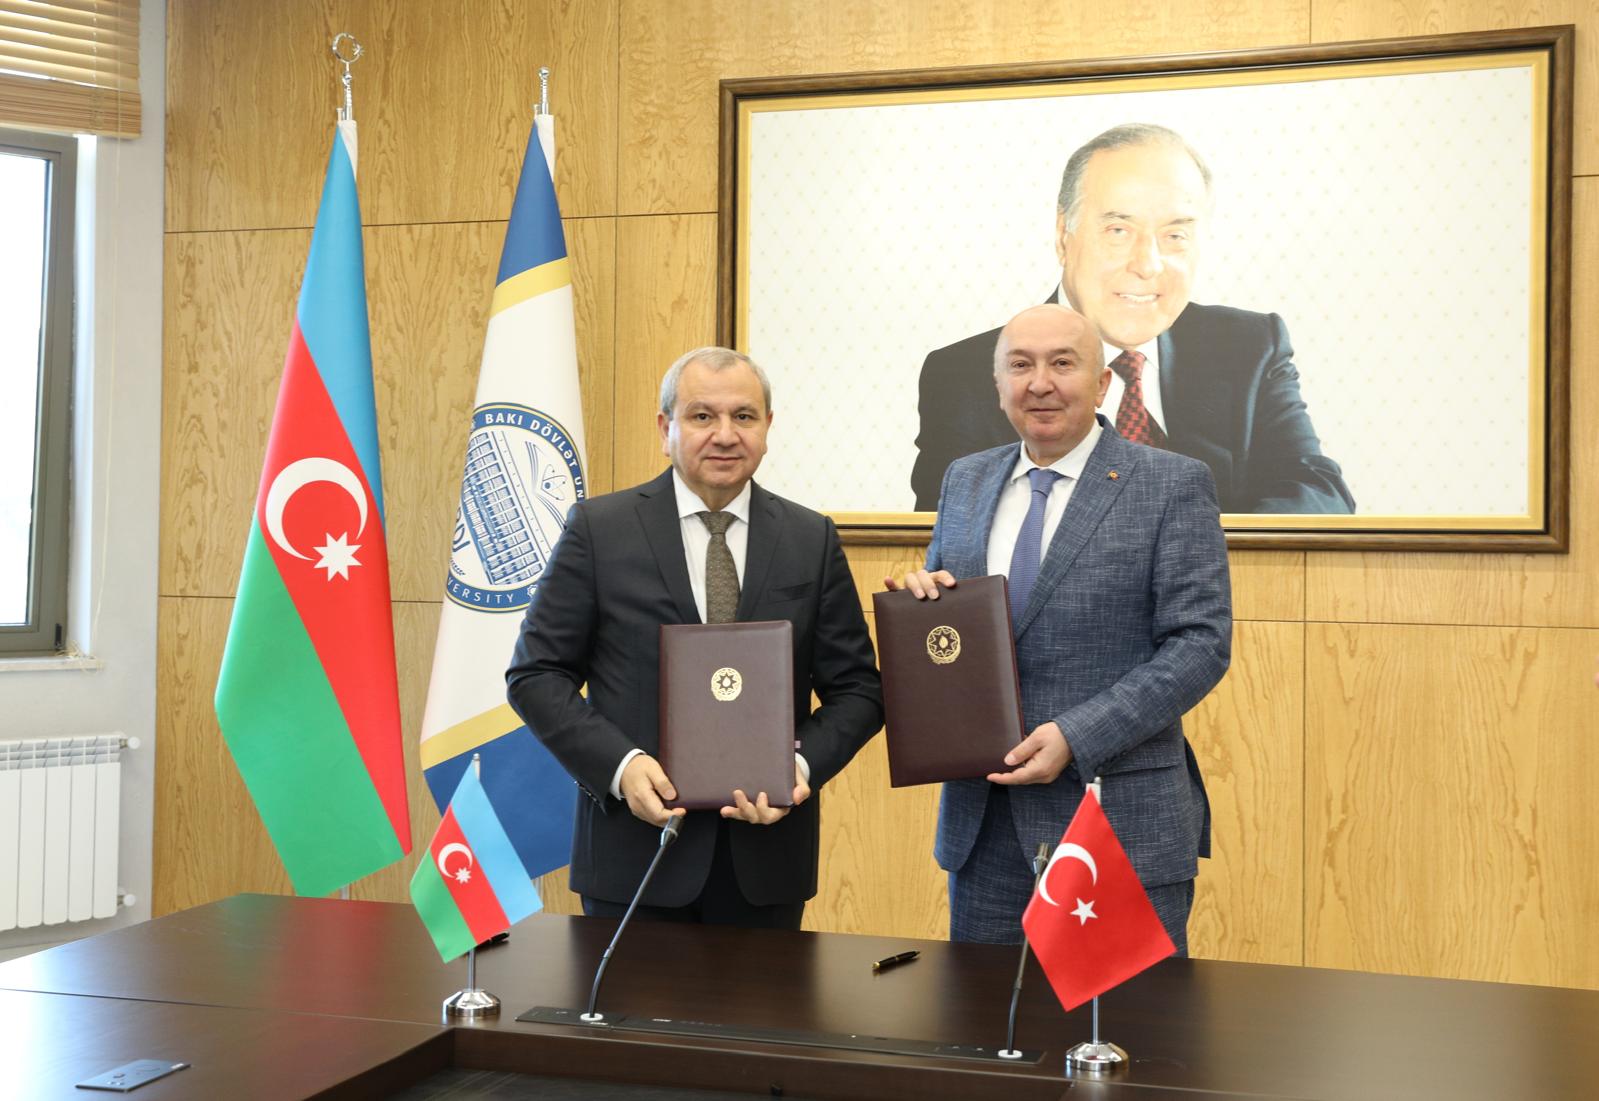 Ksu Ile Baku Devlet Universitesi Arasinda Isbirligi Protokolu Imzalandi (4)